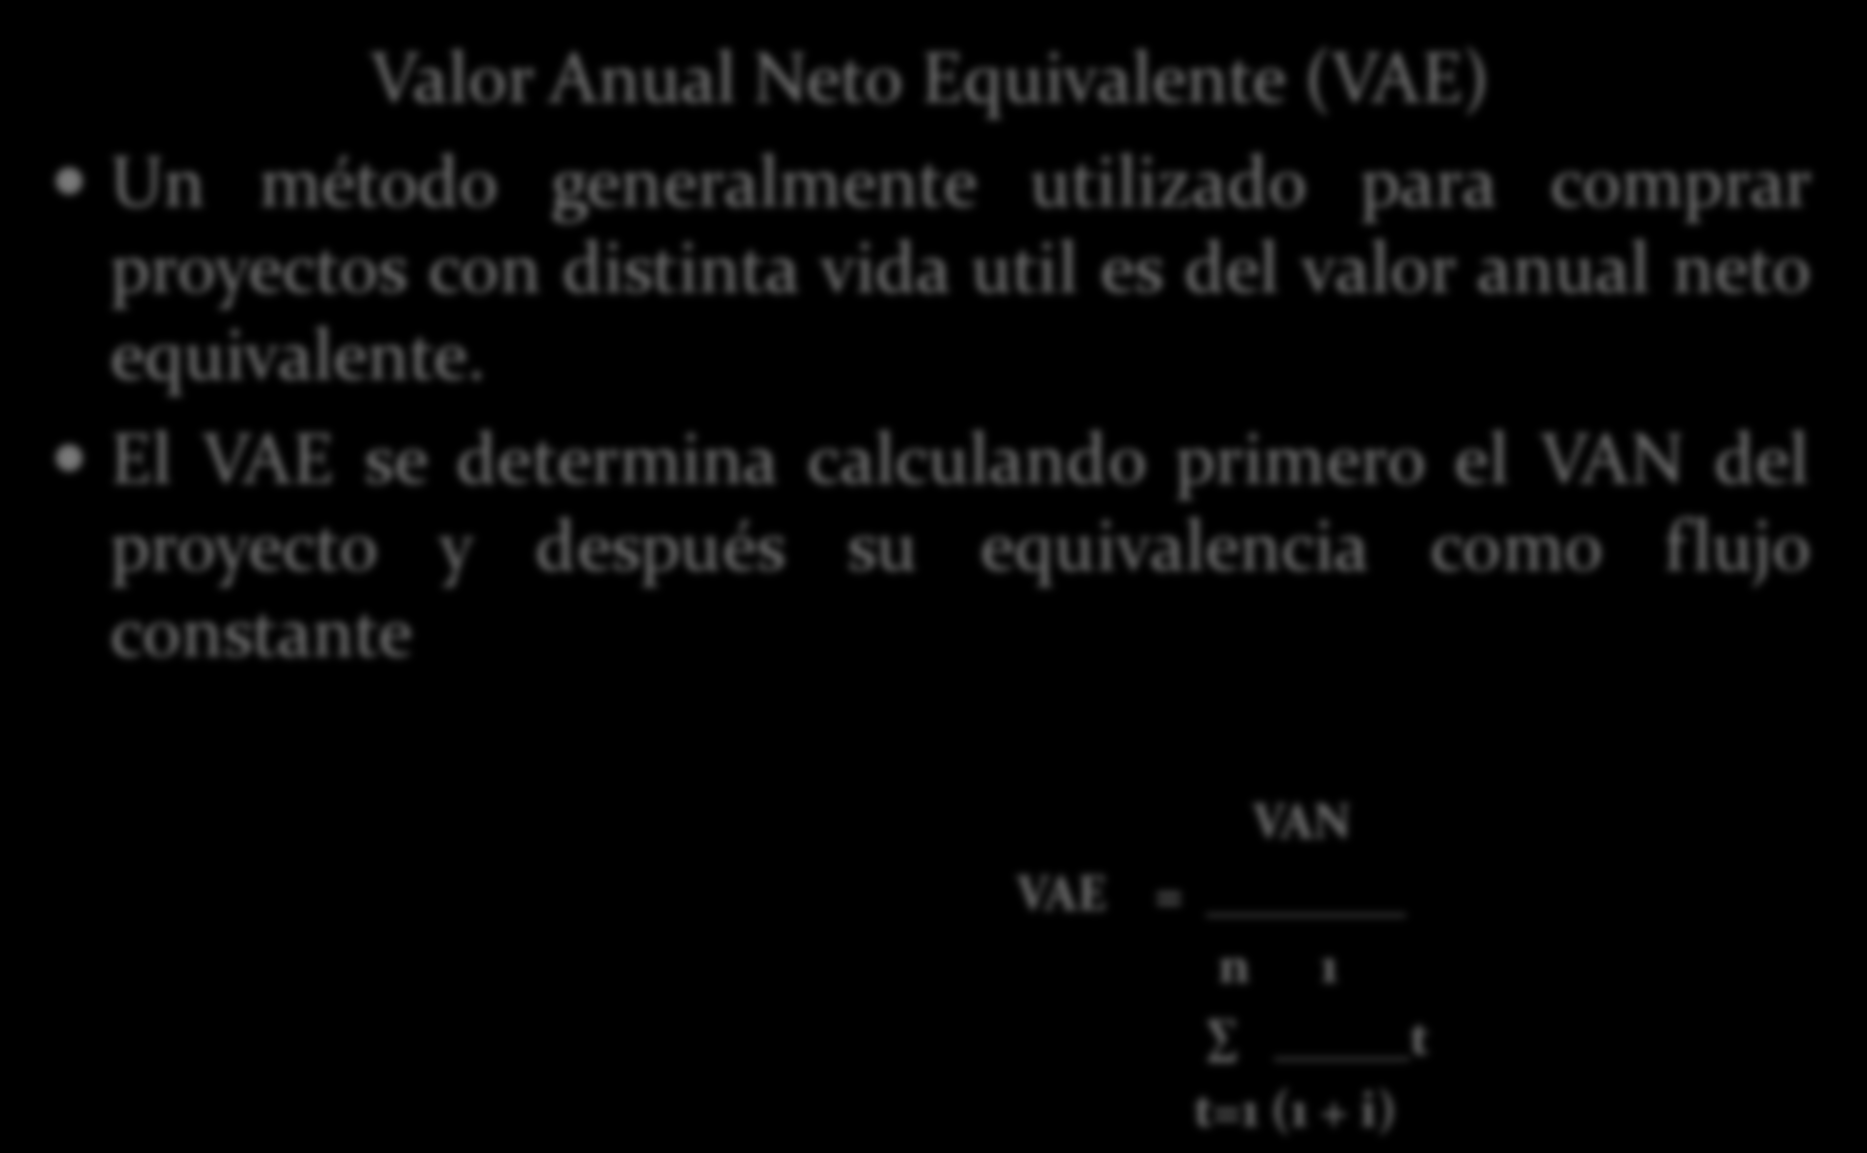 Valor Anual Neto Equivalente (VAE) Un método generalmente utilizado para comprar proyectos con distinta vida util es del valor anual neto